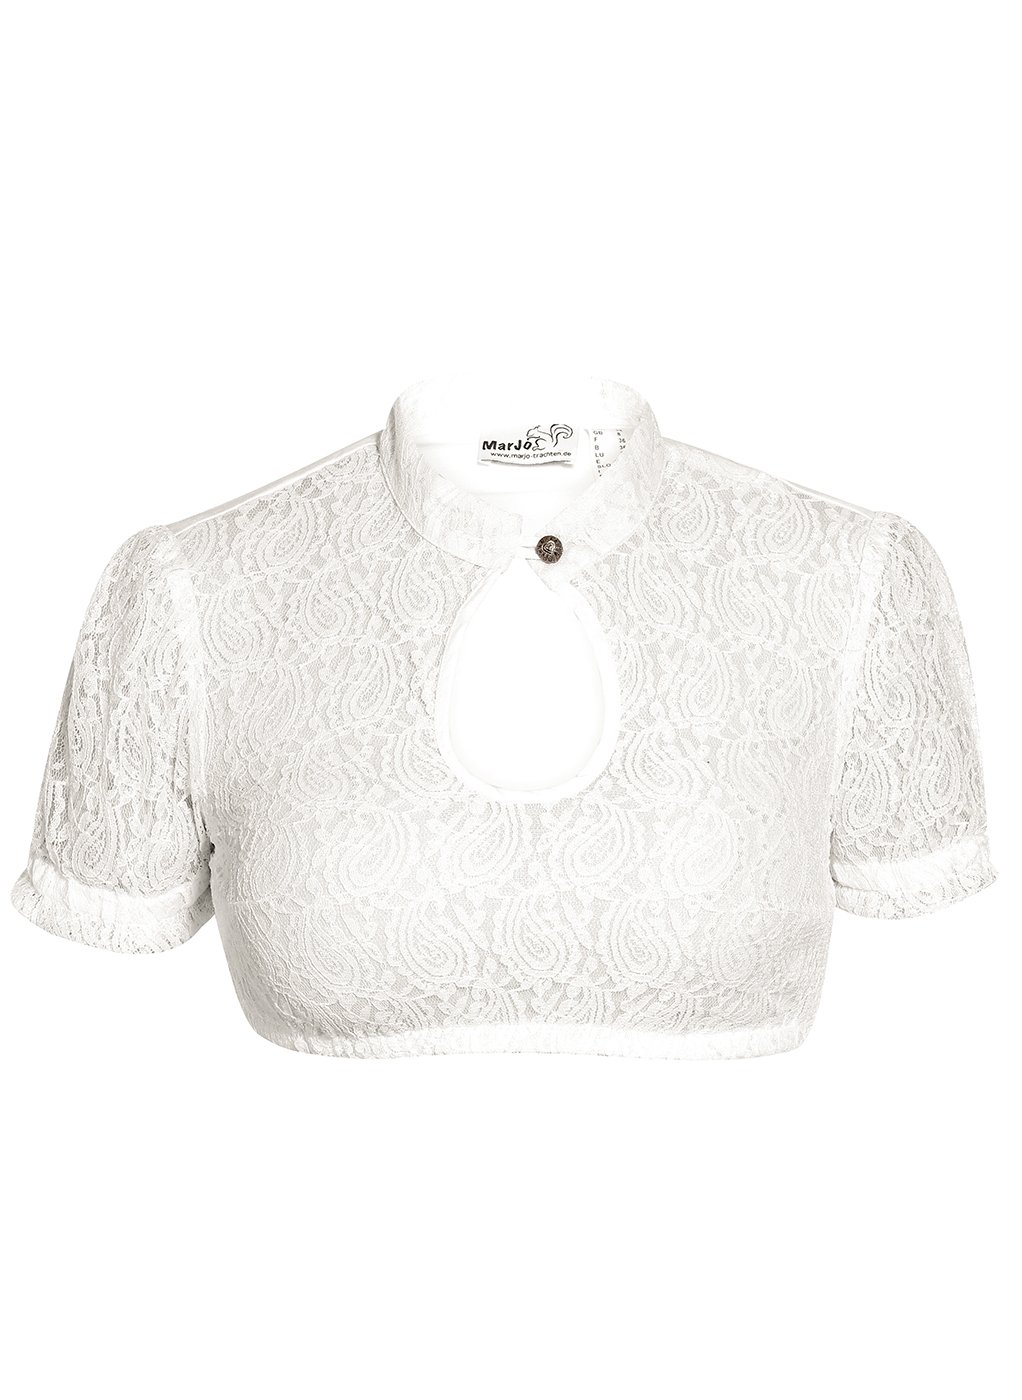 weitere Bilder von Traditional dirndl blouse BERTA-ALIA white